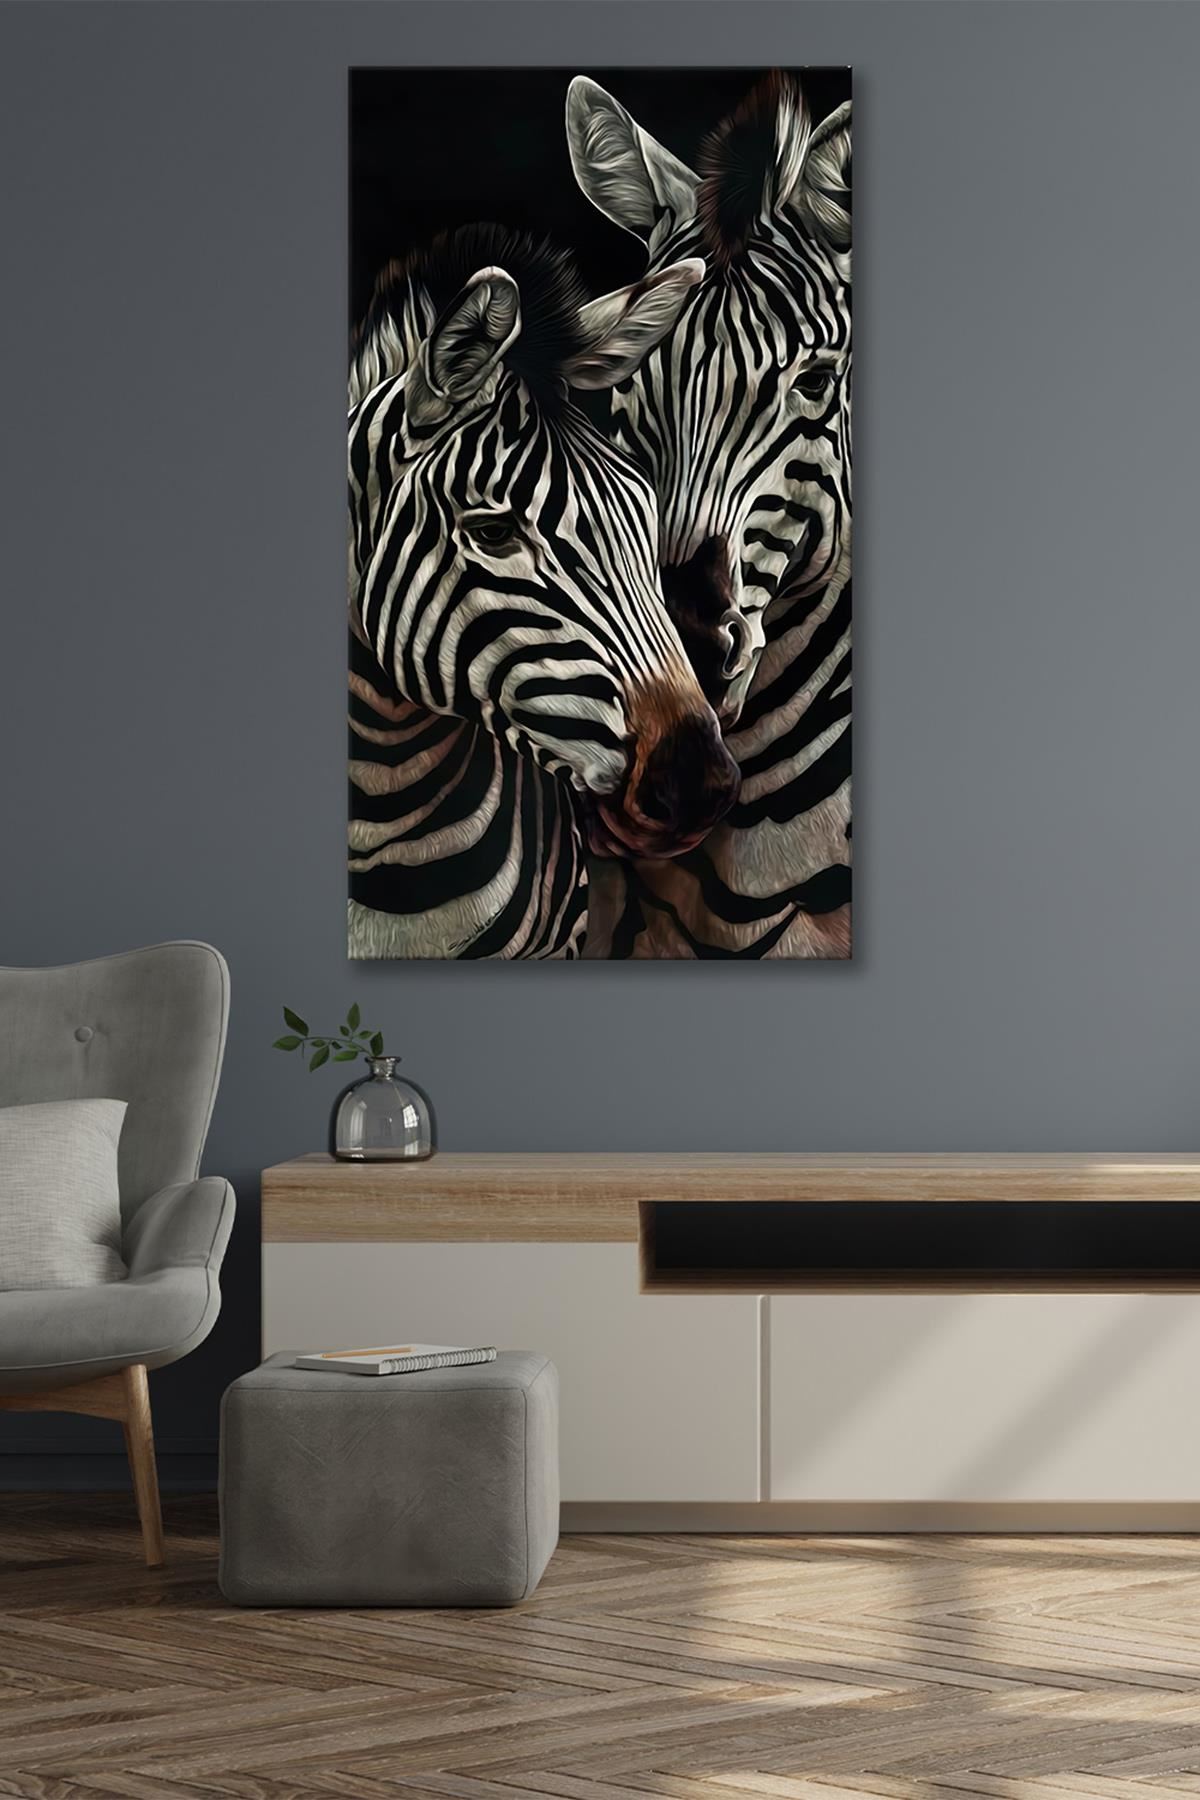 Yan Yana Duran İki Zebra  Kanvas Duvar Tablo 4452379